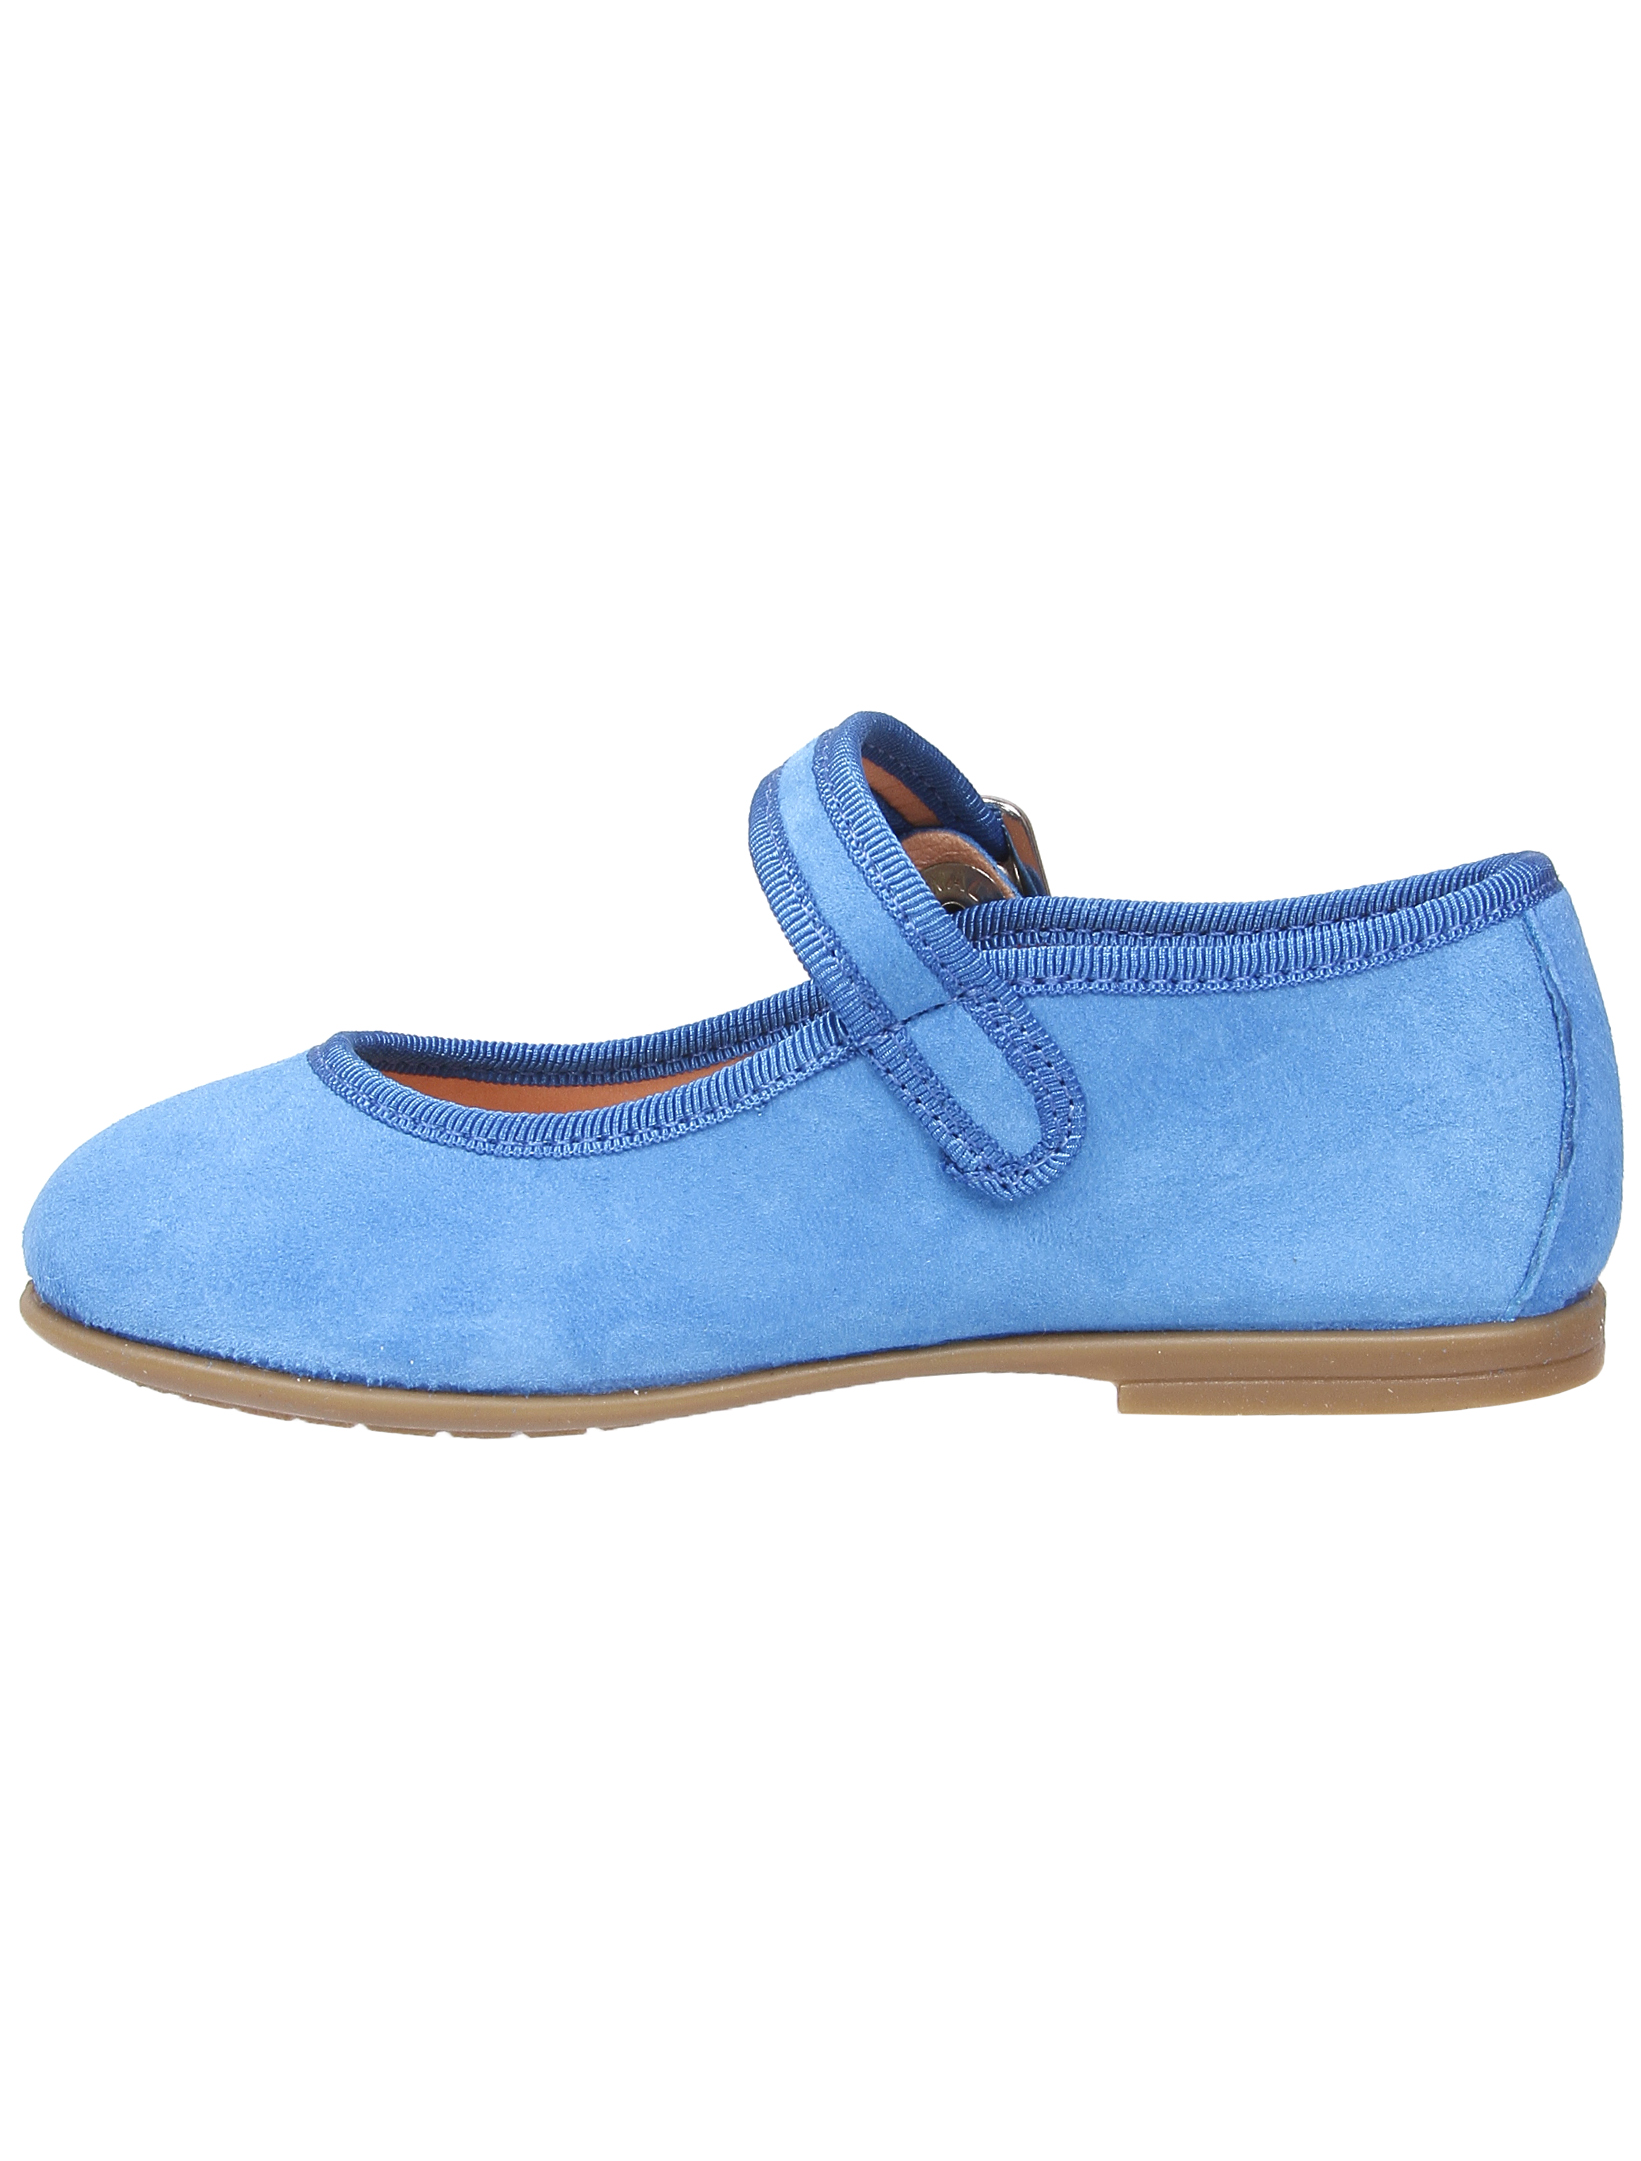 Туфли UNISA 1952860, цвет голубой, размер 35 2011509970013 - фото 4